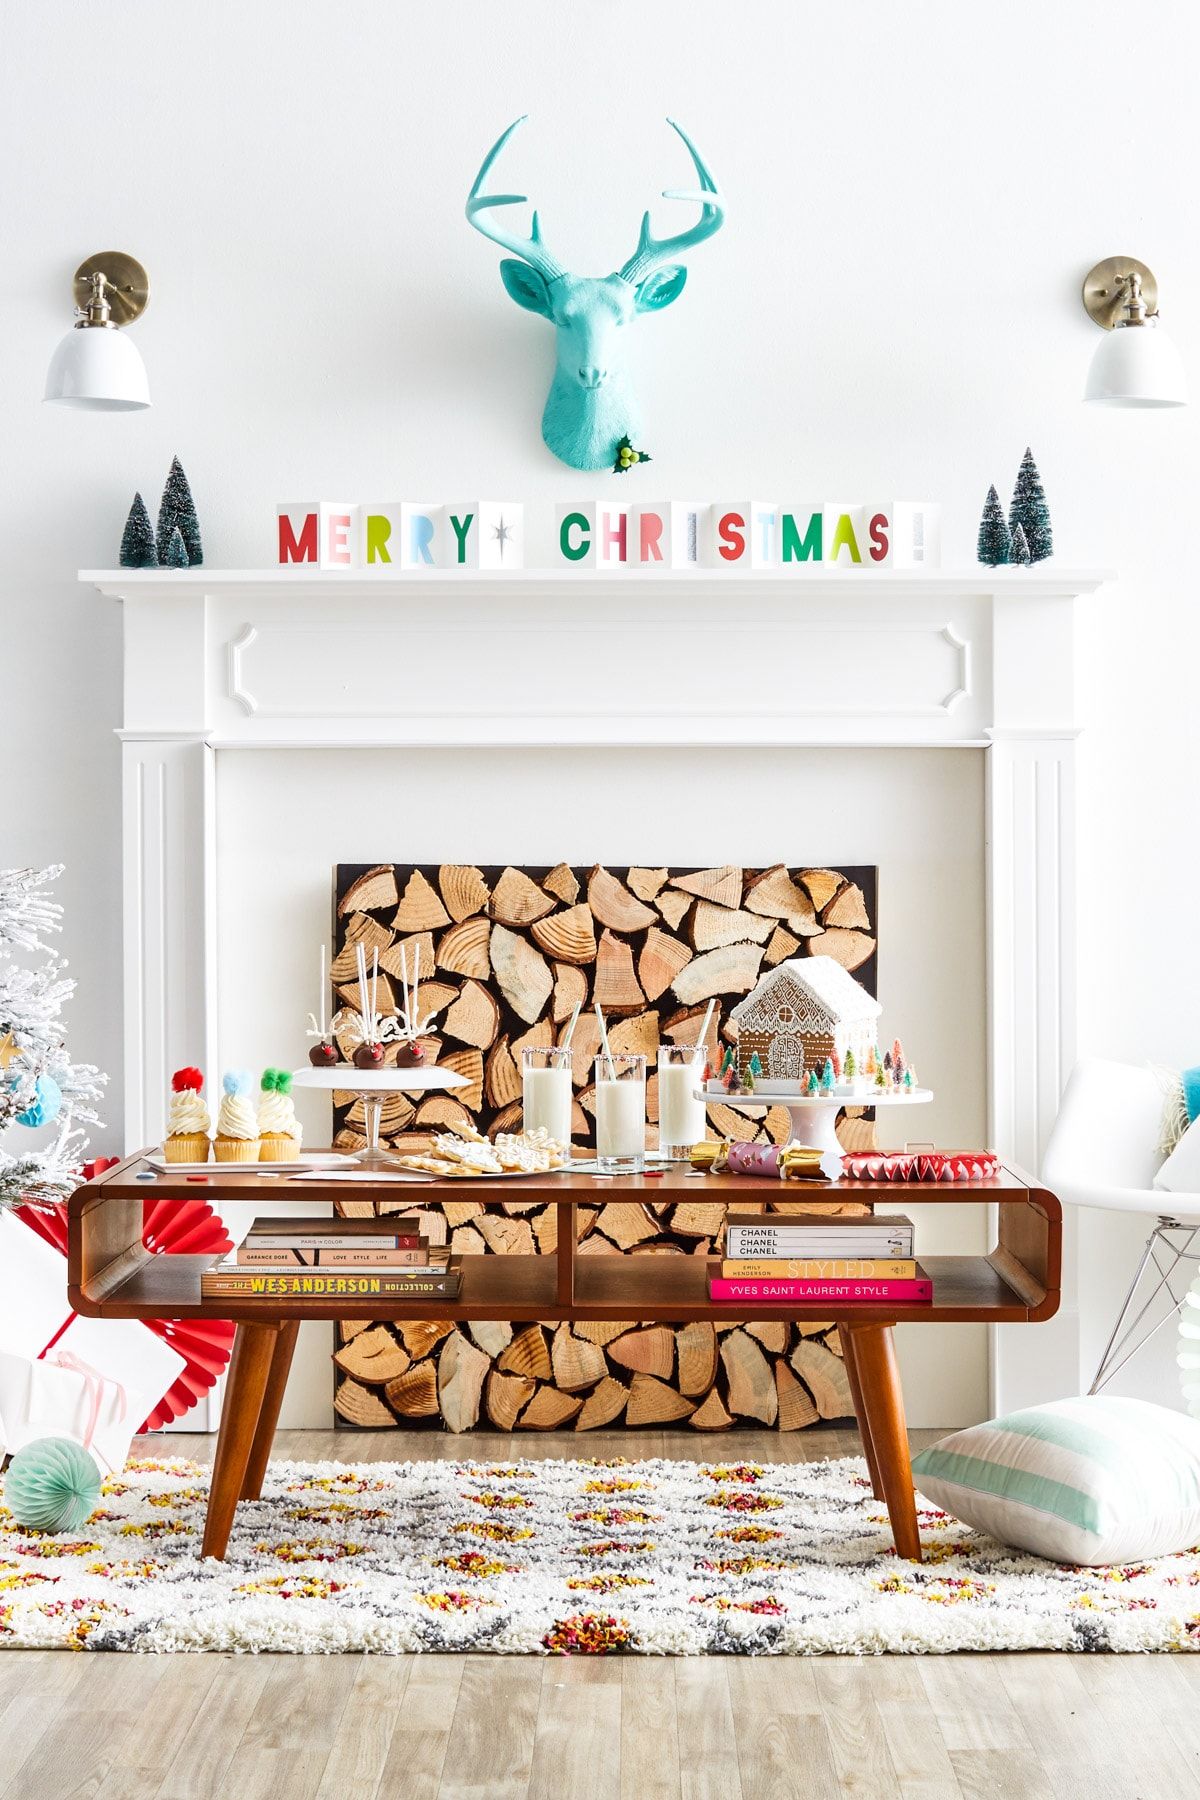 クリスマスのマントルピースの装飾のアイデア、暖炉のレトロなインスピレーションを得たログ